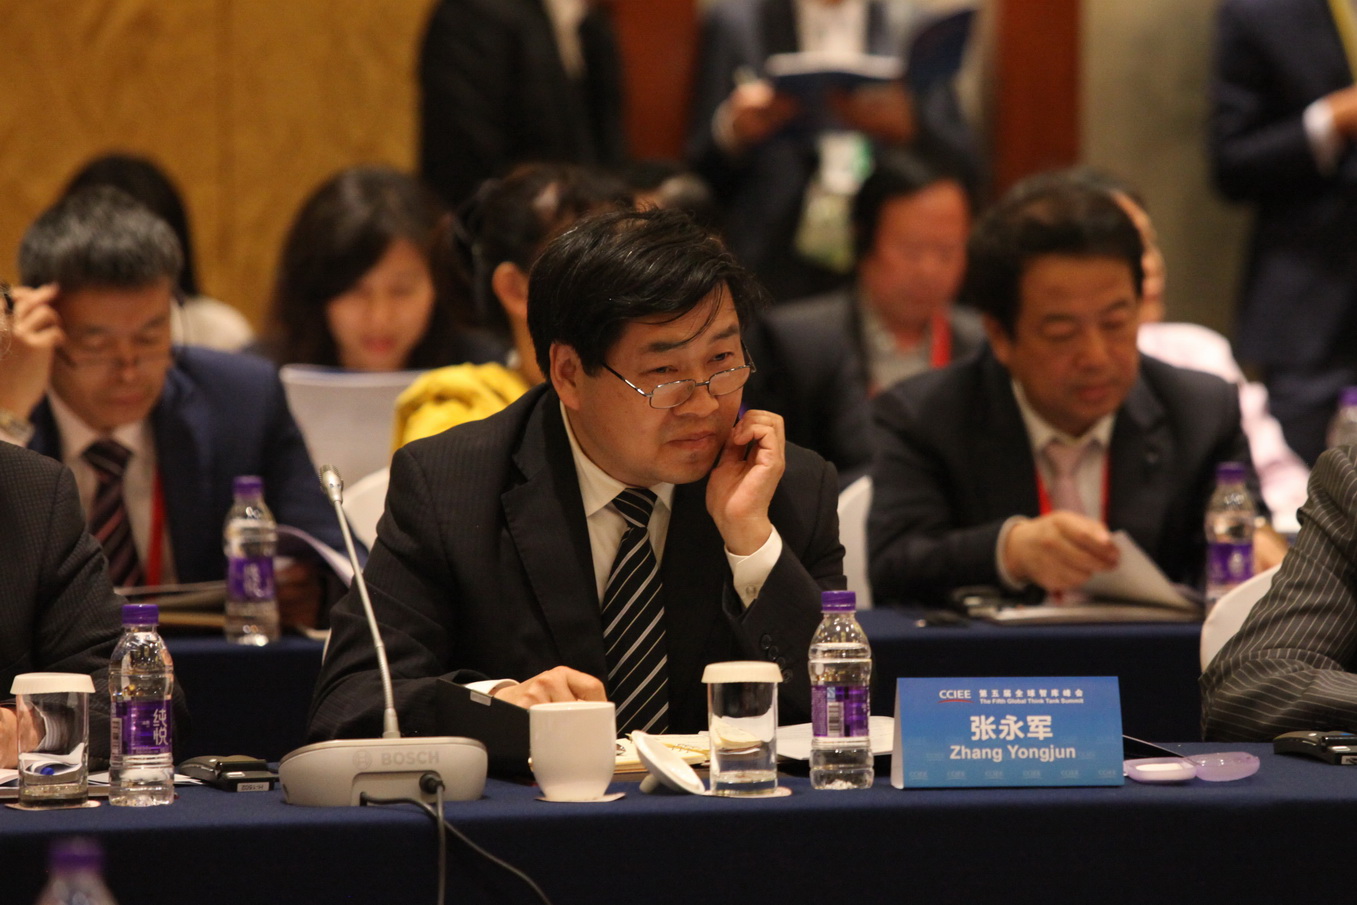 Zhang Yongjun, Deputy Economist of CCIEE